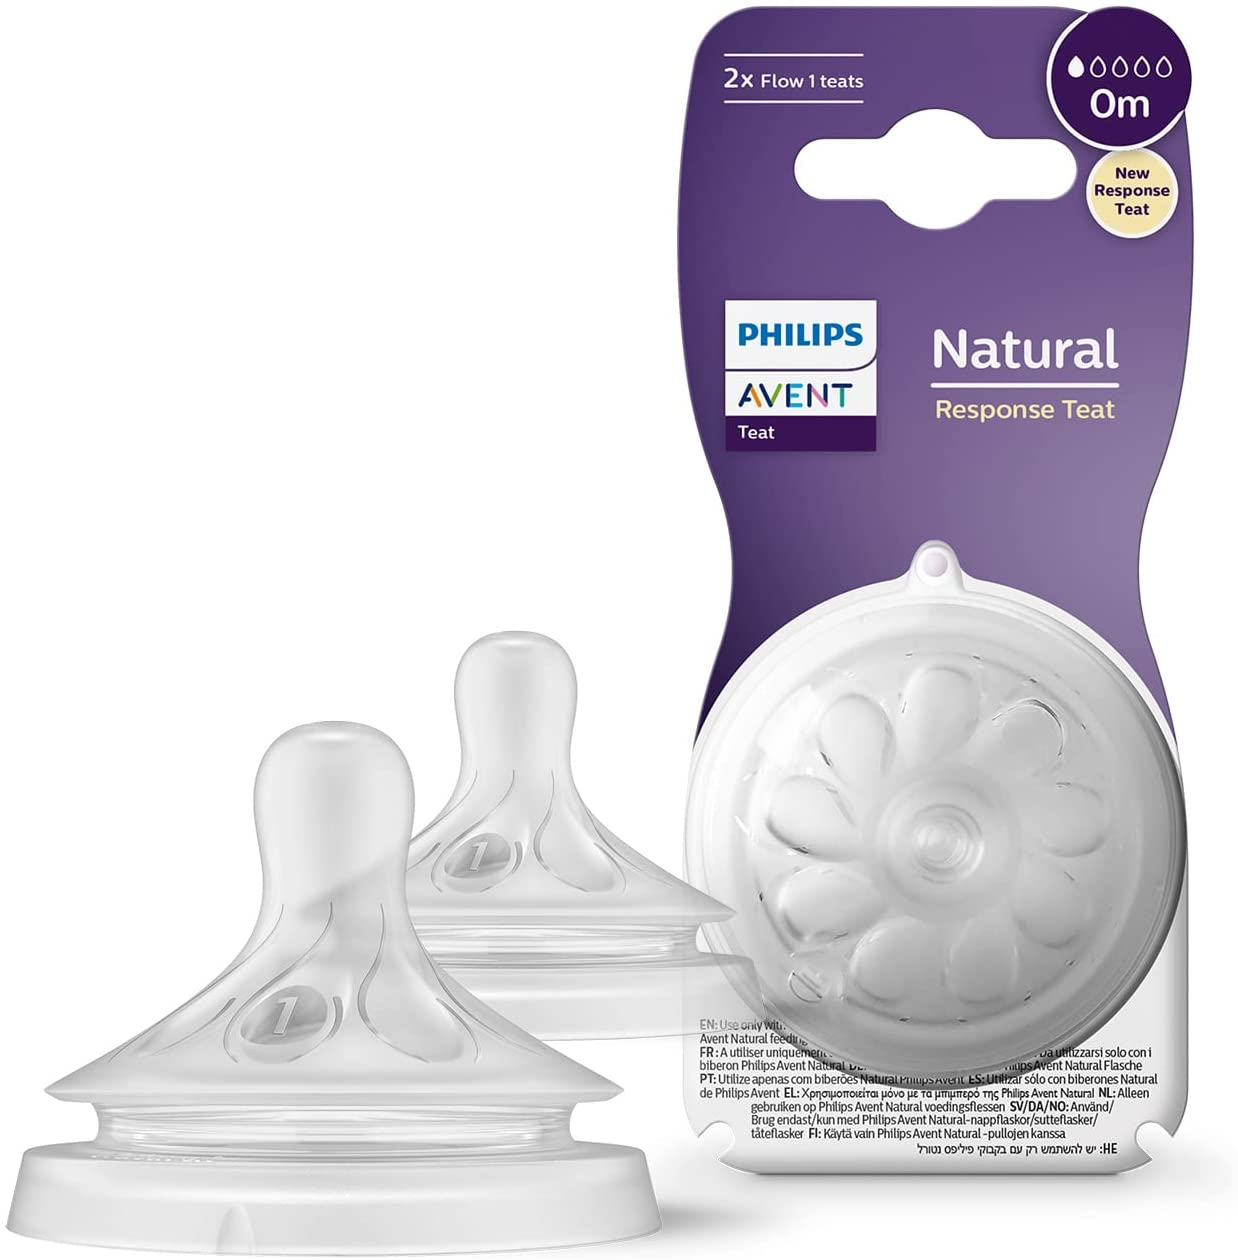 Philips Avent natural de resposta de mamadeira Tetina  - 2 x mamadeira Flow 1 tetina para bebês recém-nascidos, 0 meses, livre de BPA (modelo SCY961/02)